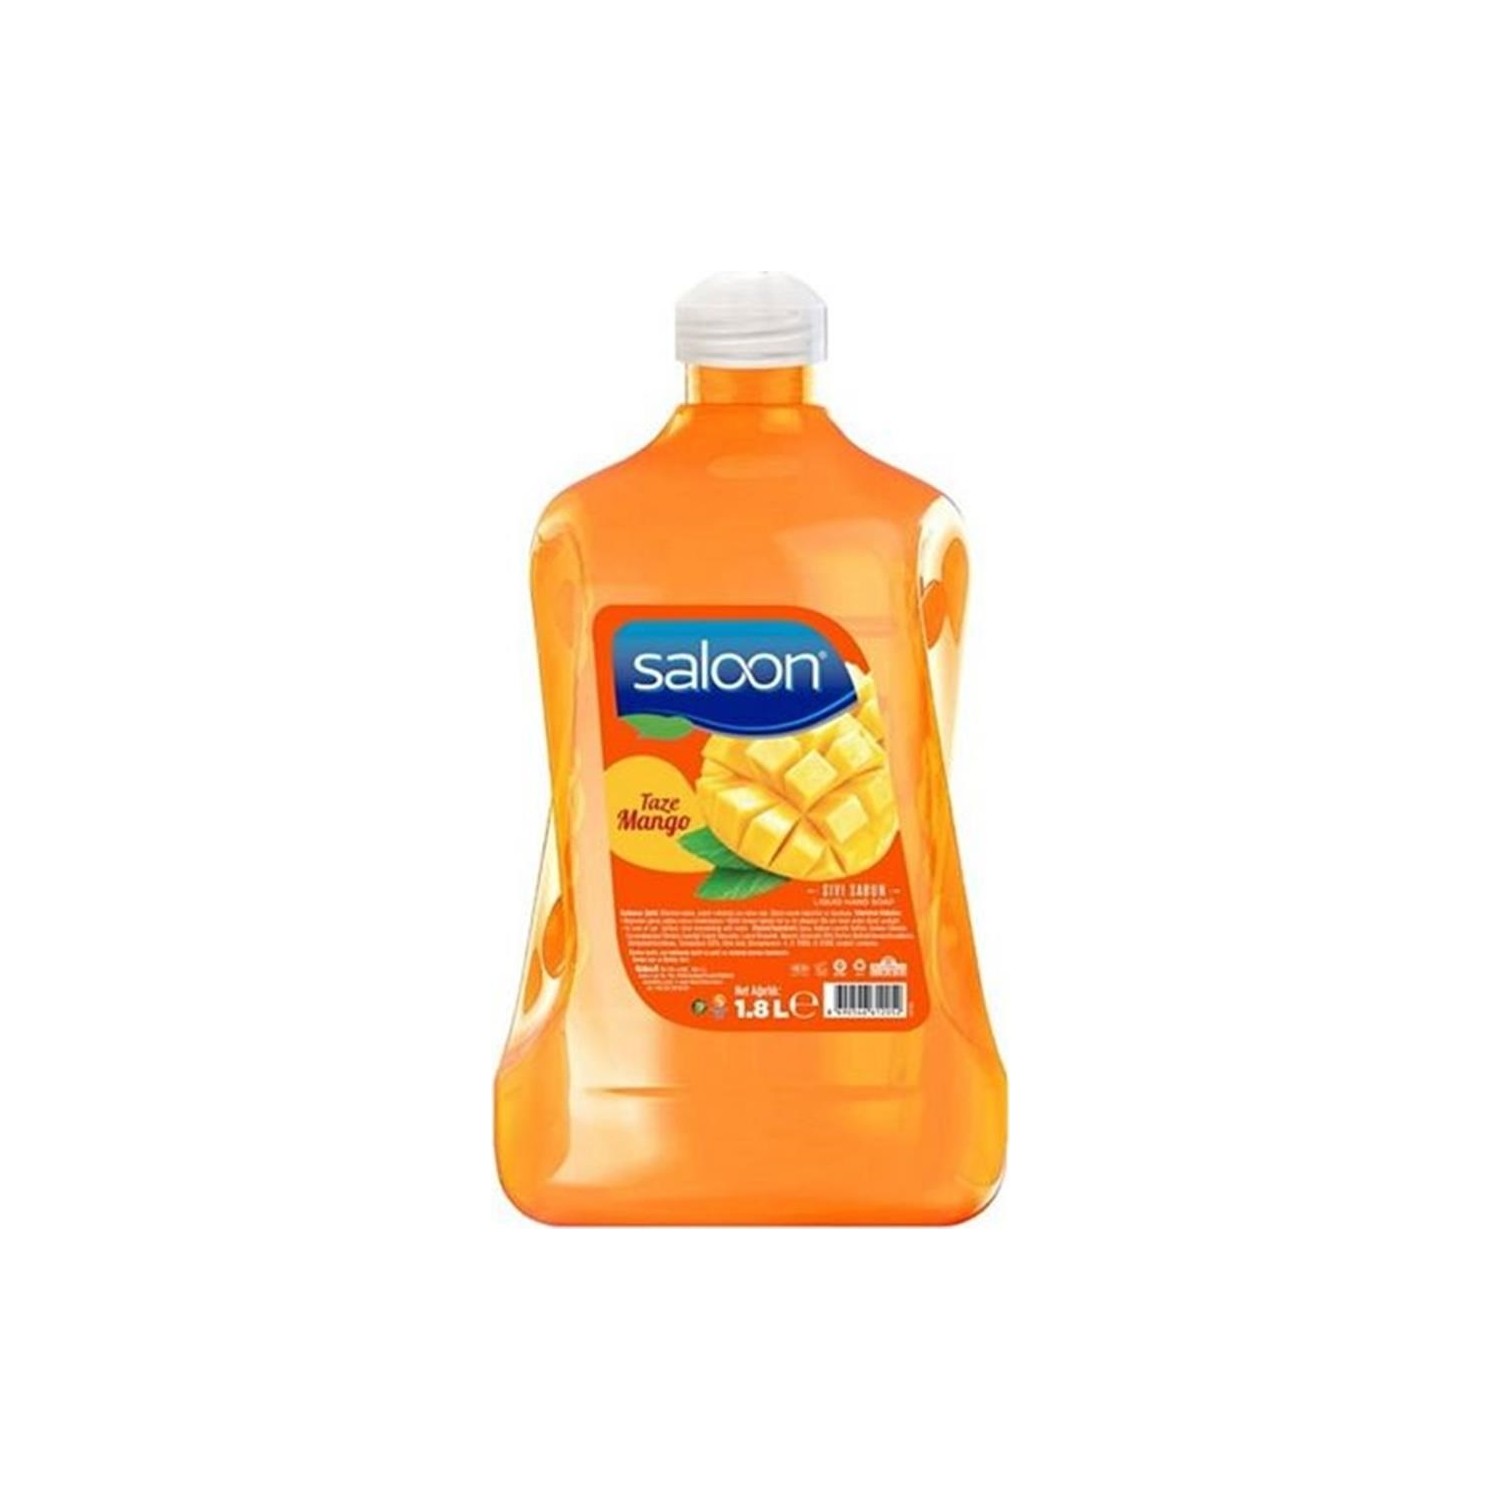 saloon sivi sabun taze mango 1 8 lt fiyati taksit secenekleri